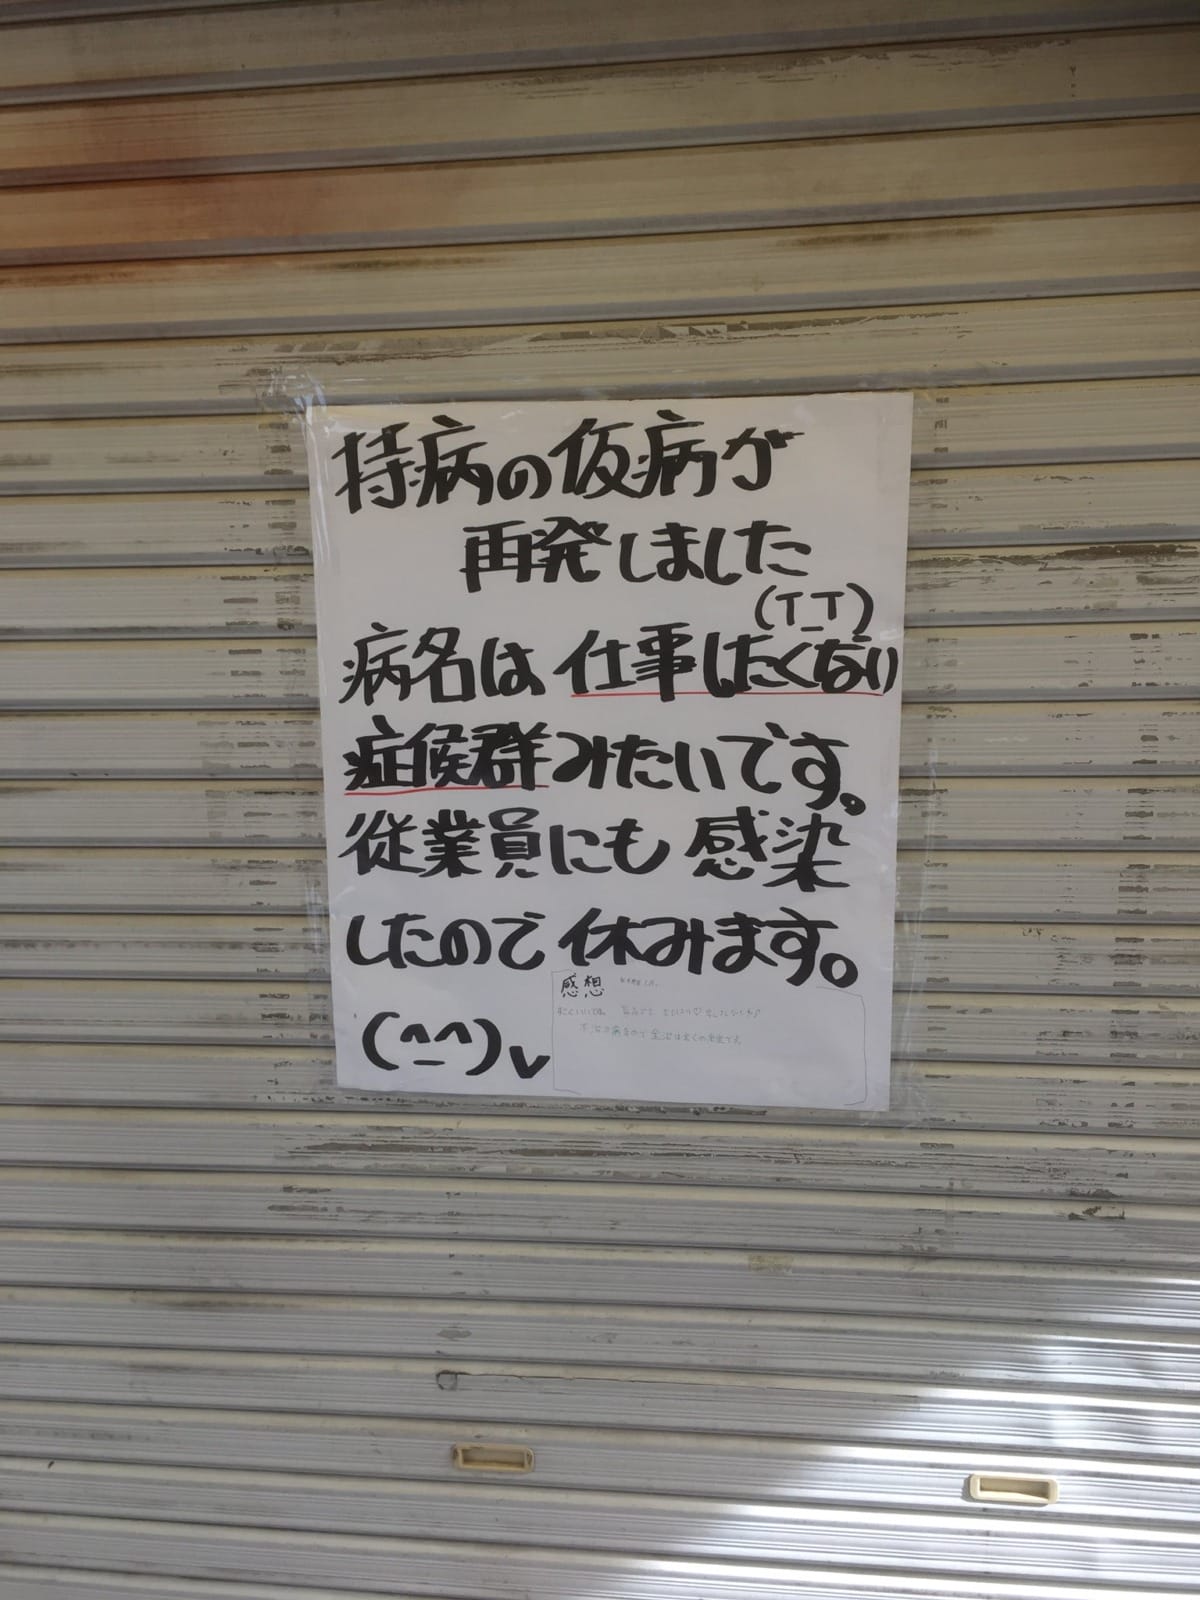 ร้านค้าญี่ปุ่นปิดร้าน เพราะติดโรคไม่อยากทำงาน